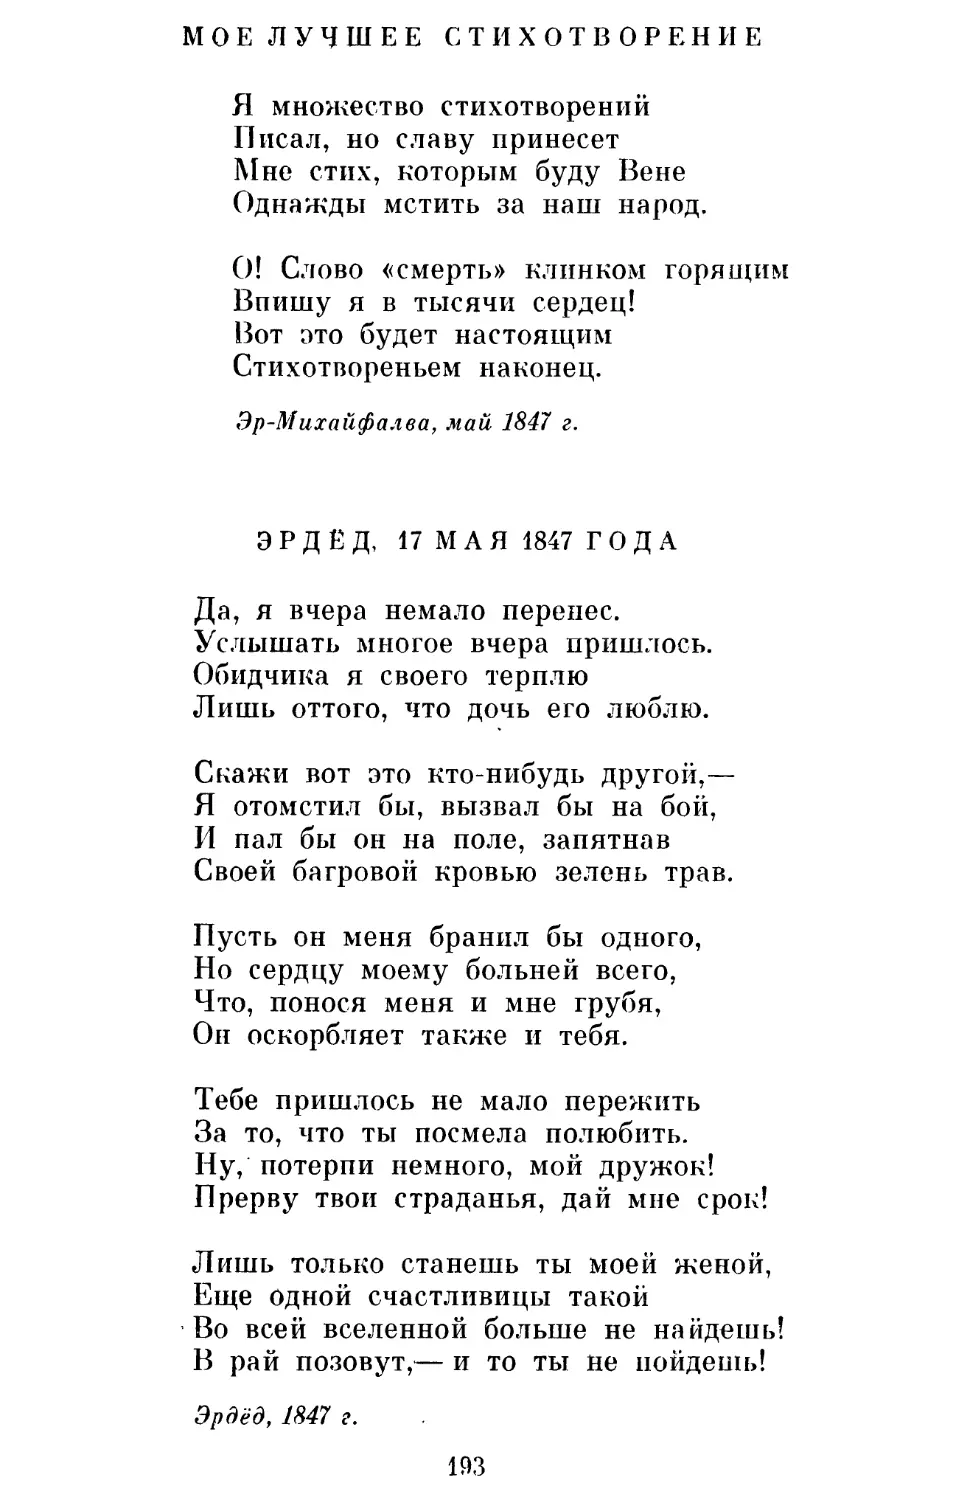 Мое лучшее стихотворение. Перевод Л. Мартынова
Эрдёд, 17 мая 1847 года. Перевод Н. Чуковского